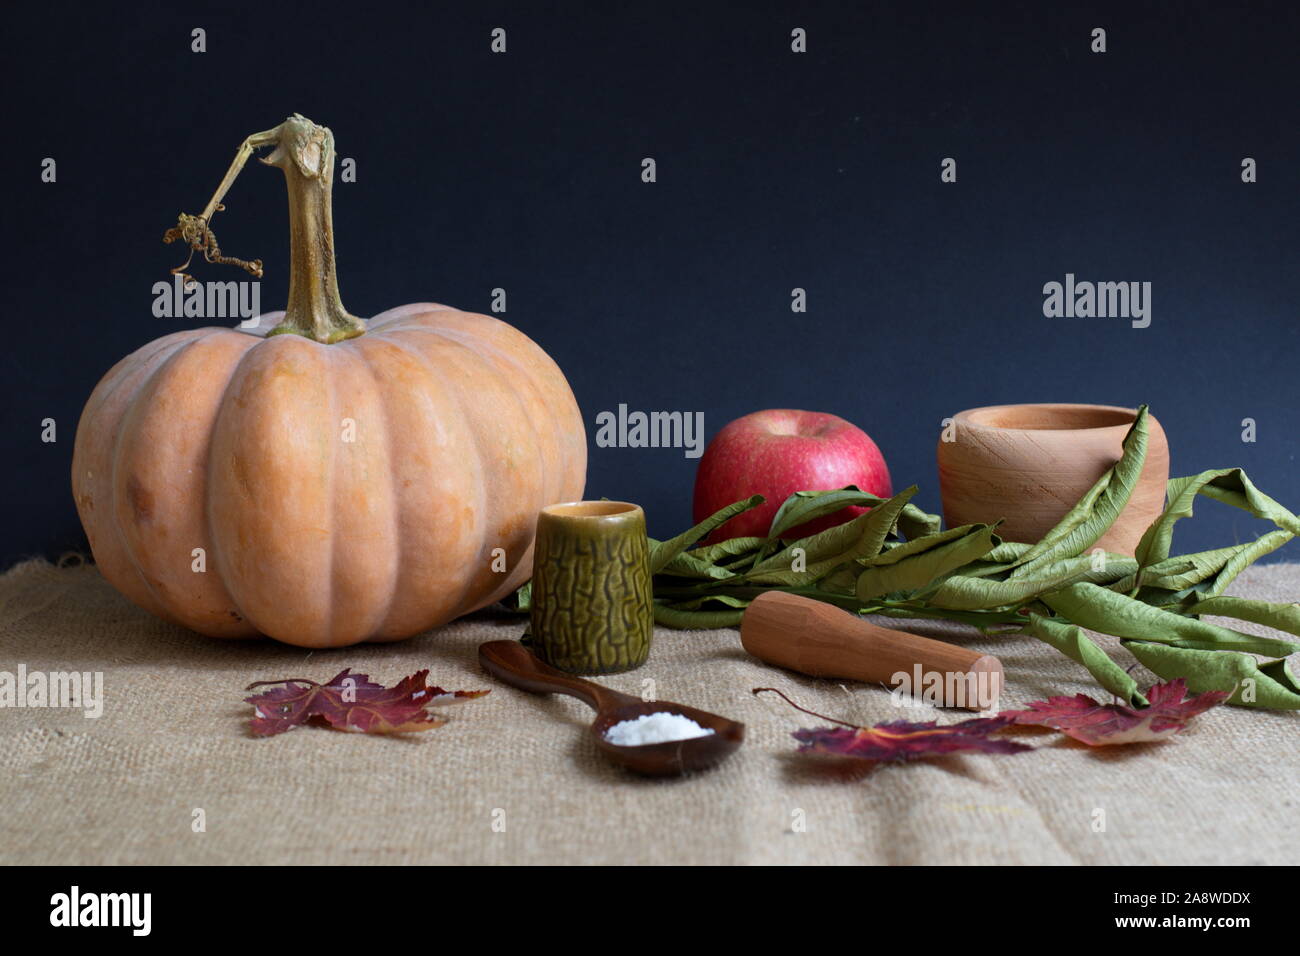 Kürbis, Apfel und Gewürze auf dem Tisch vor dem dunklen Hintergrund - Thanksgiving Dekoration Stockfoto